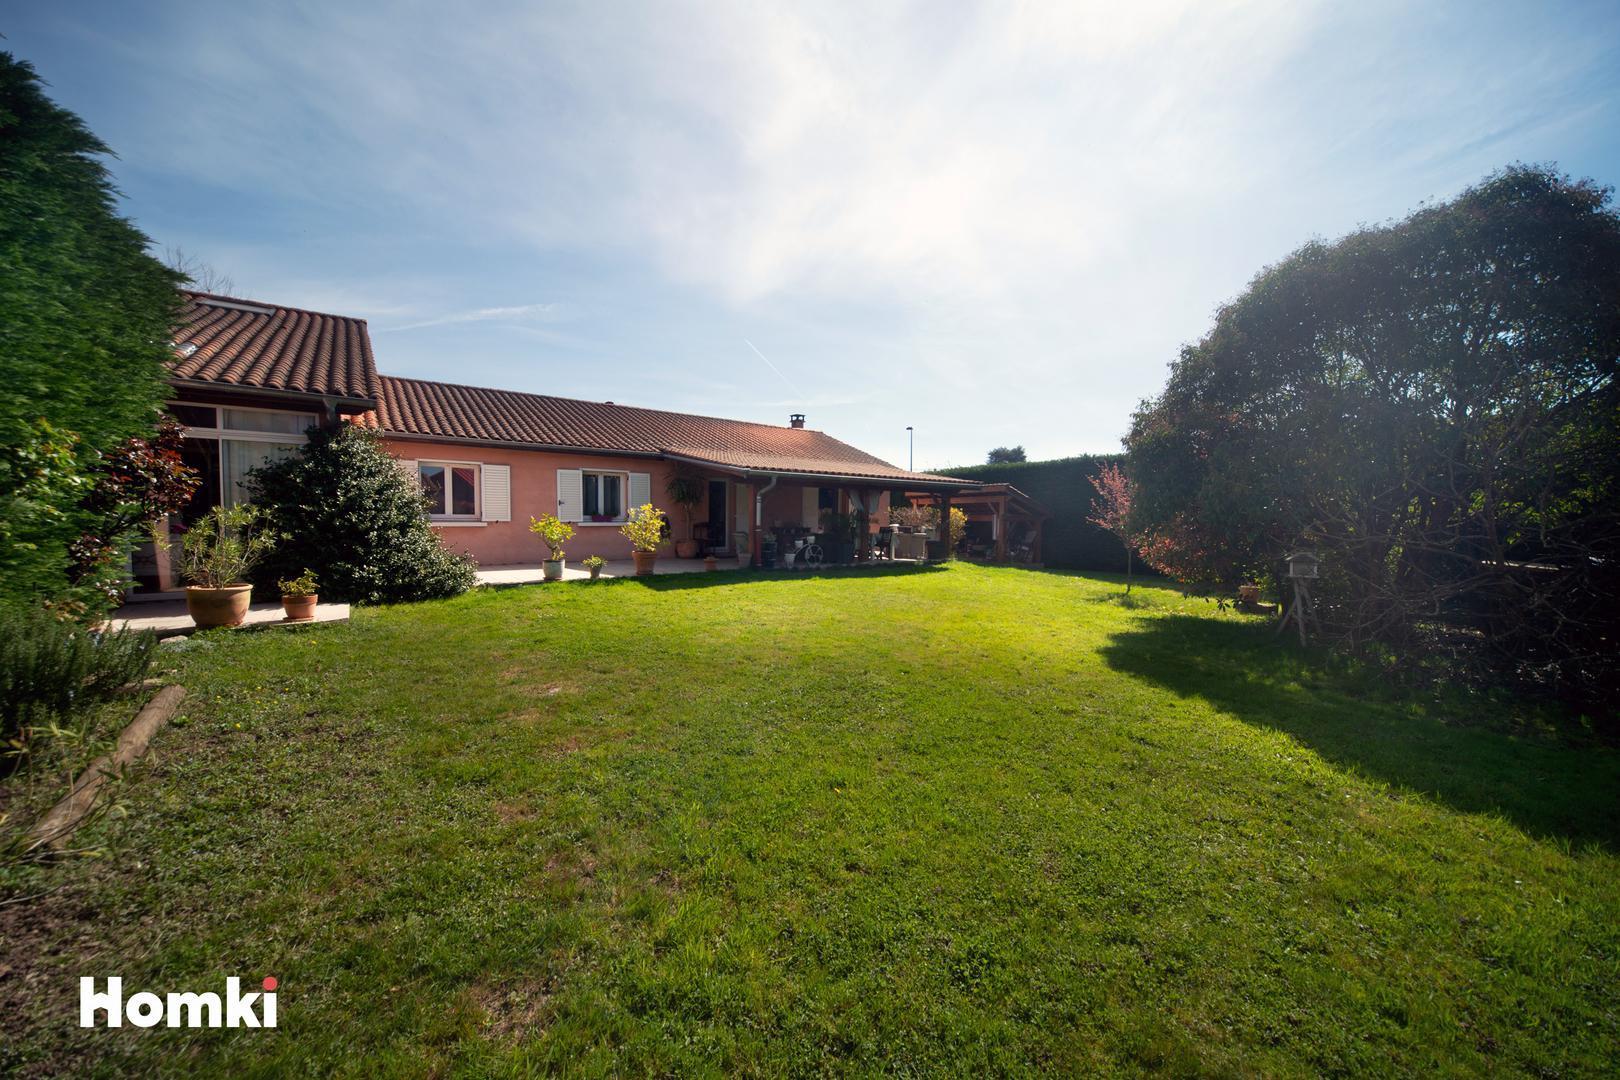 Homki - Vente Maison/villa  de 145.0 m² à Villars-les-Dombes 01330